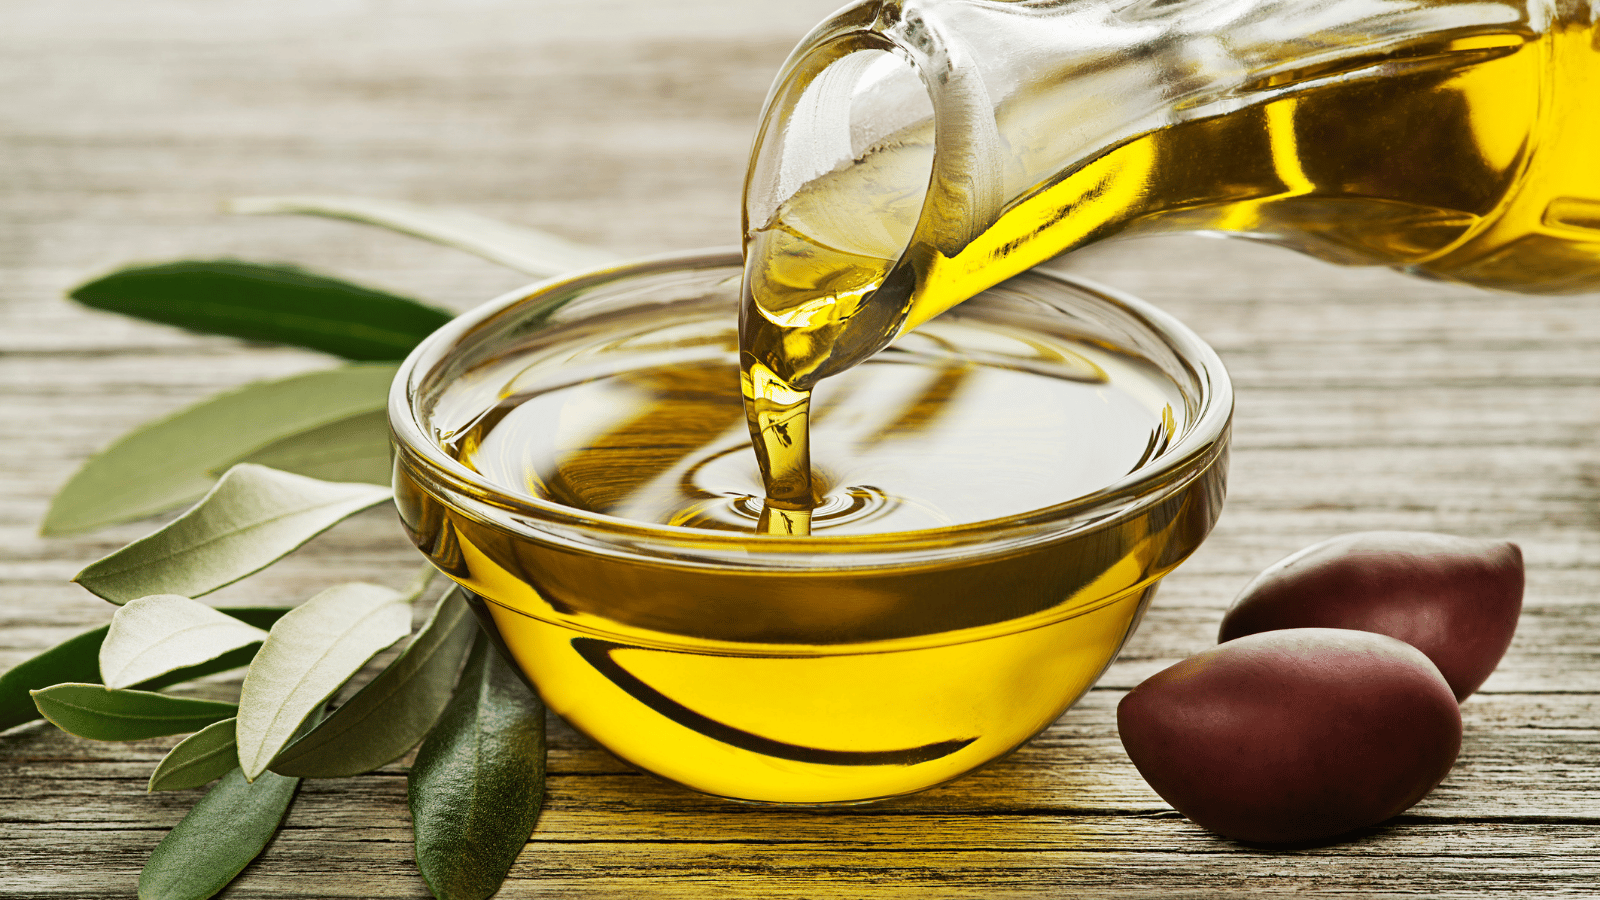 Les bienfaits de l’huile d’olive